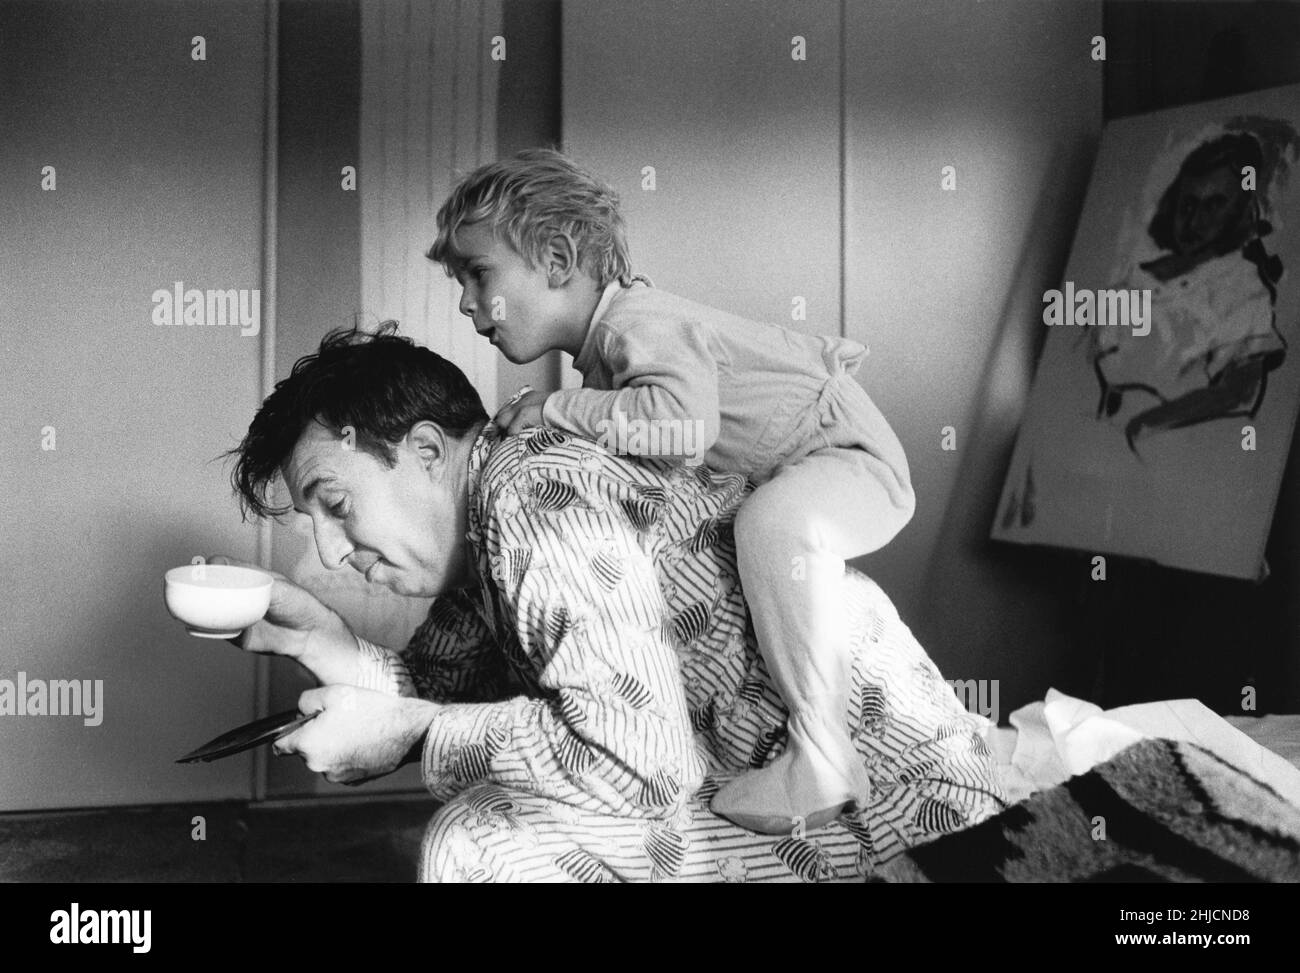 Photographie en noir et blanc d'un garçon grimpant sur son père en début de matinée.Photographie prise pour le Ladies' Home Journal vers 1963. Banque D'Images